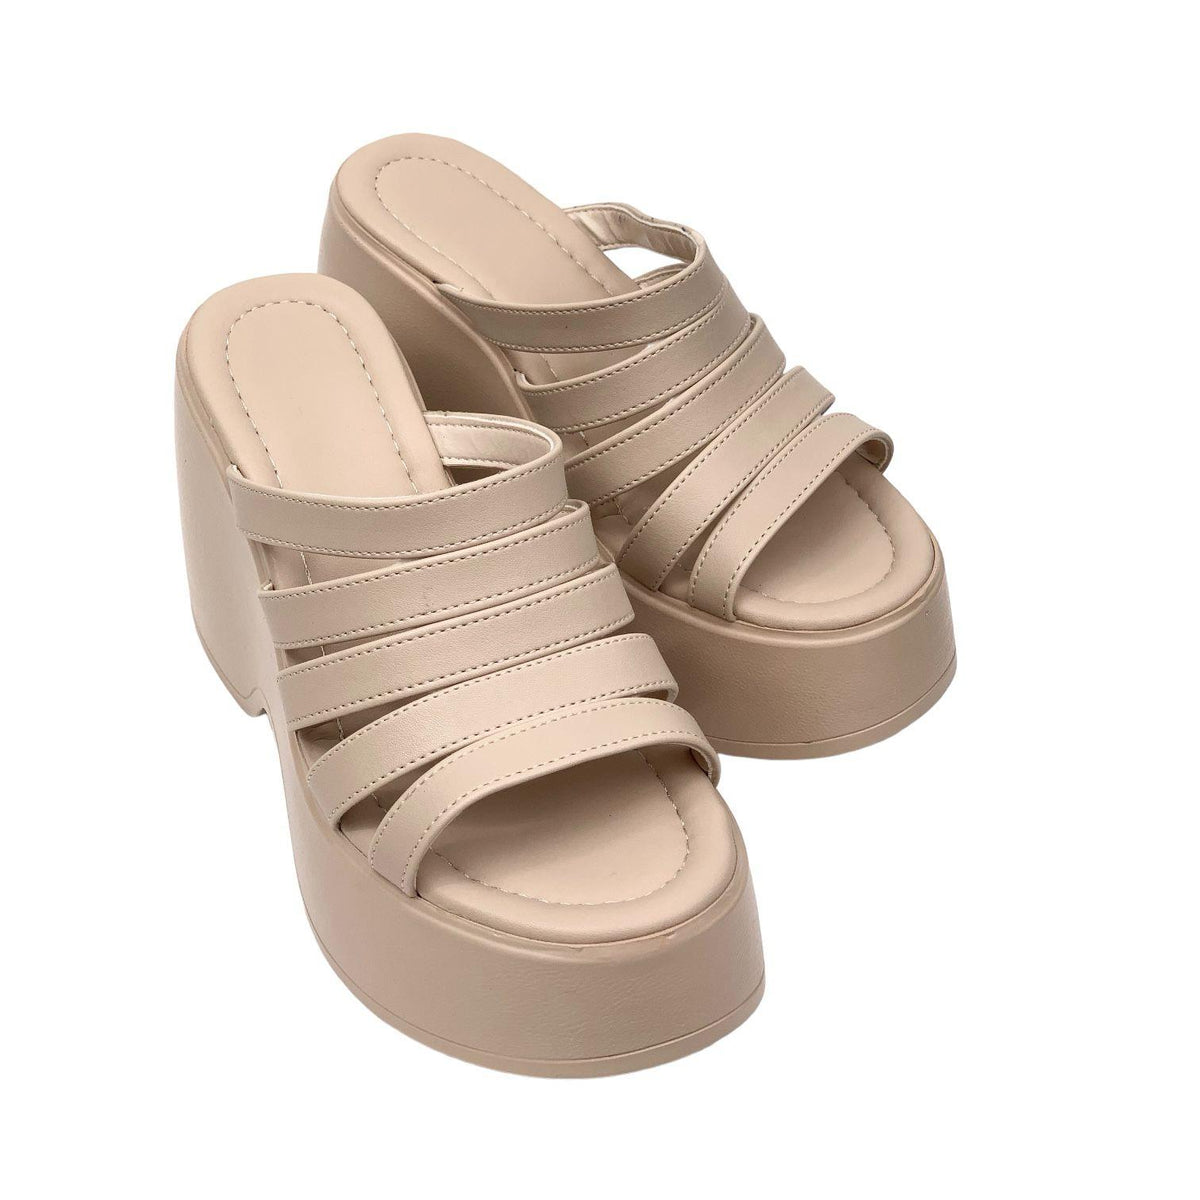 Women's Gehm Nut Strappy High Heel Platform Sandals 10 Cm DLG11